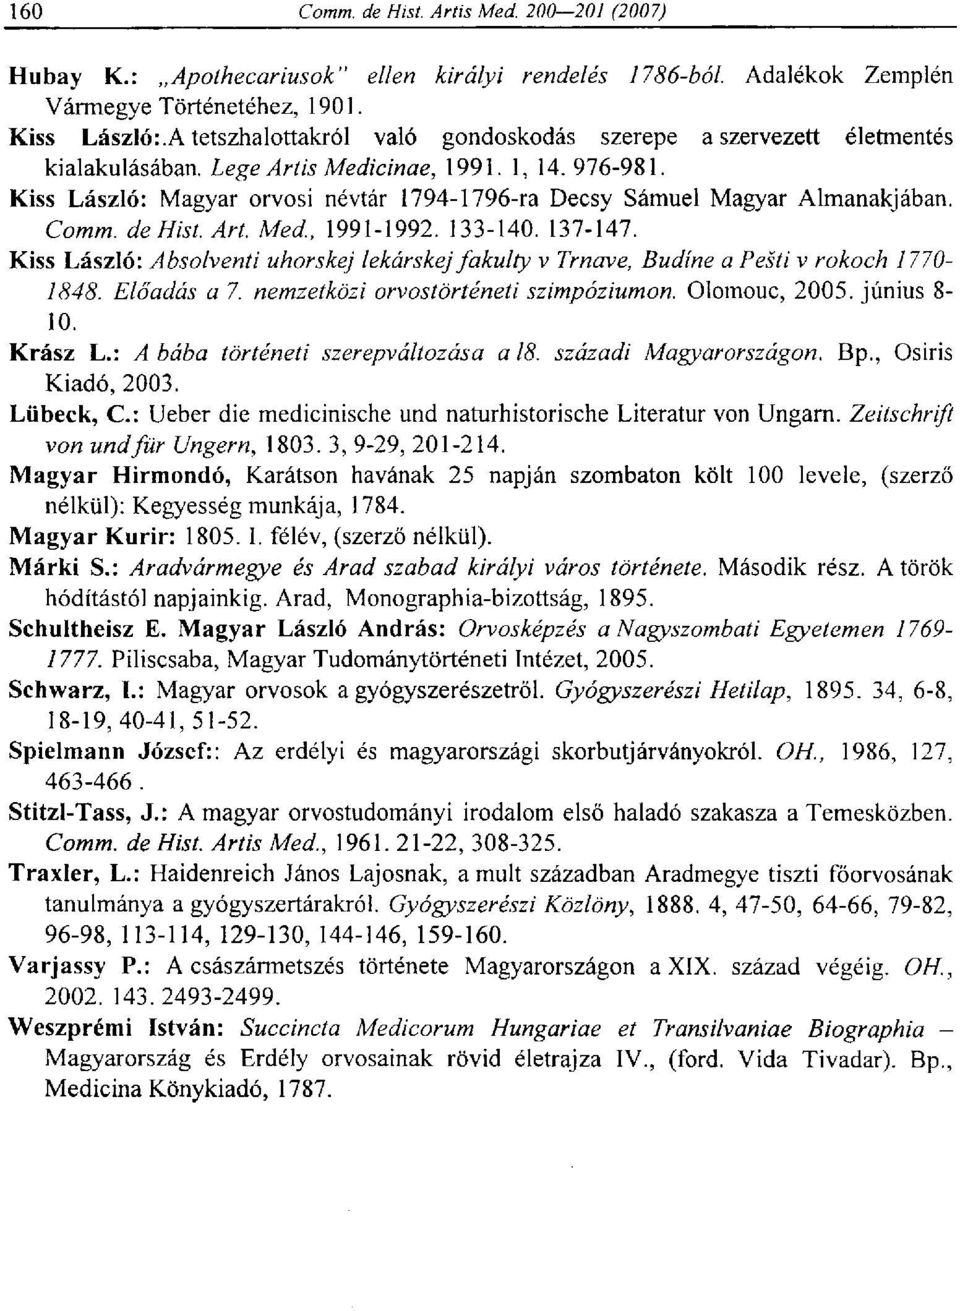 Kiss László: Magyar orvosi névtár 1794-1796-ra Decsy Sámuel Magyar Almanakjában. Comm. de Hist. Art. Med, 1991-1992. 133-140. 137-147.